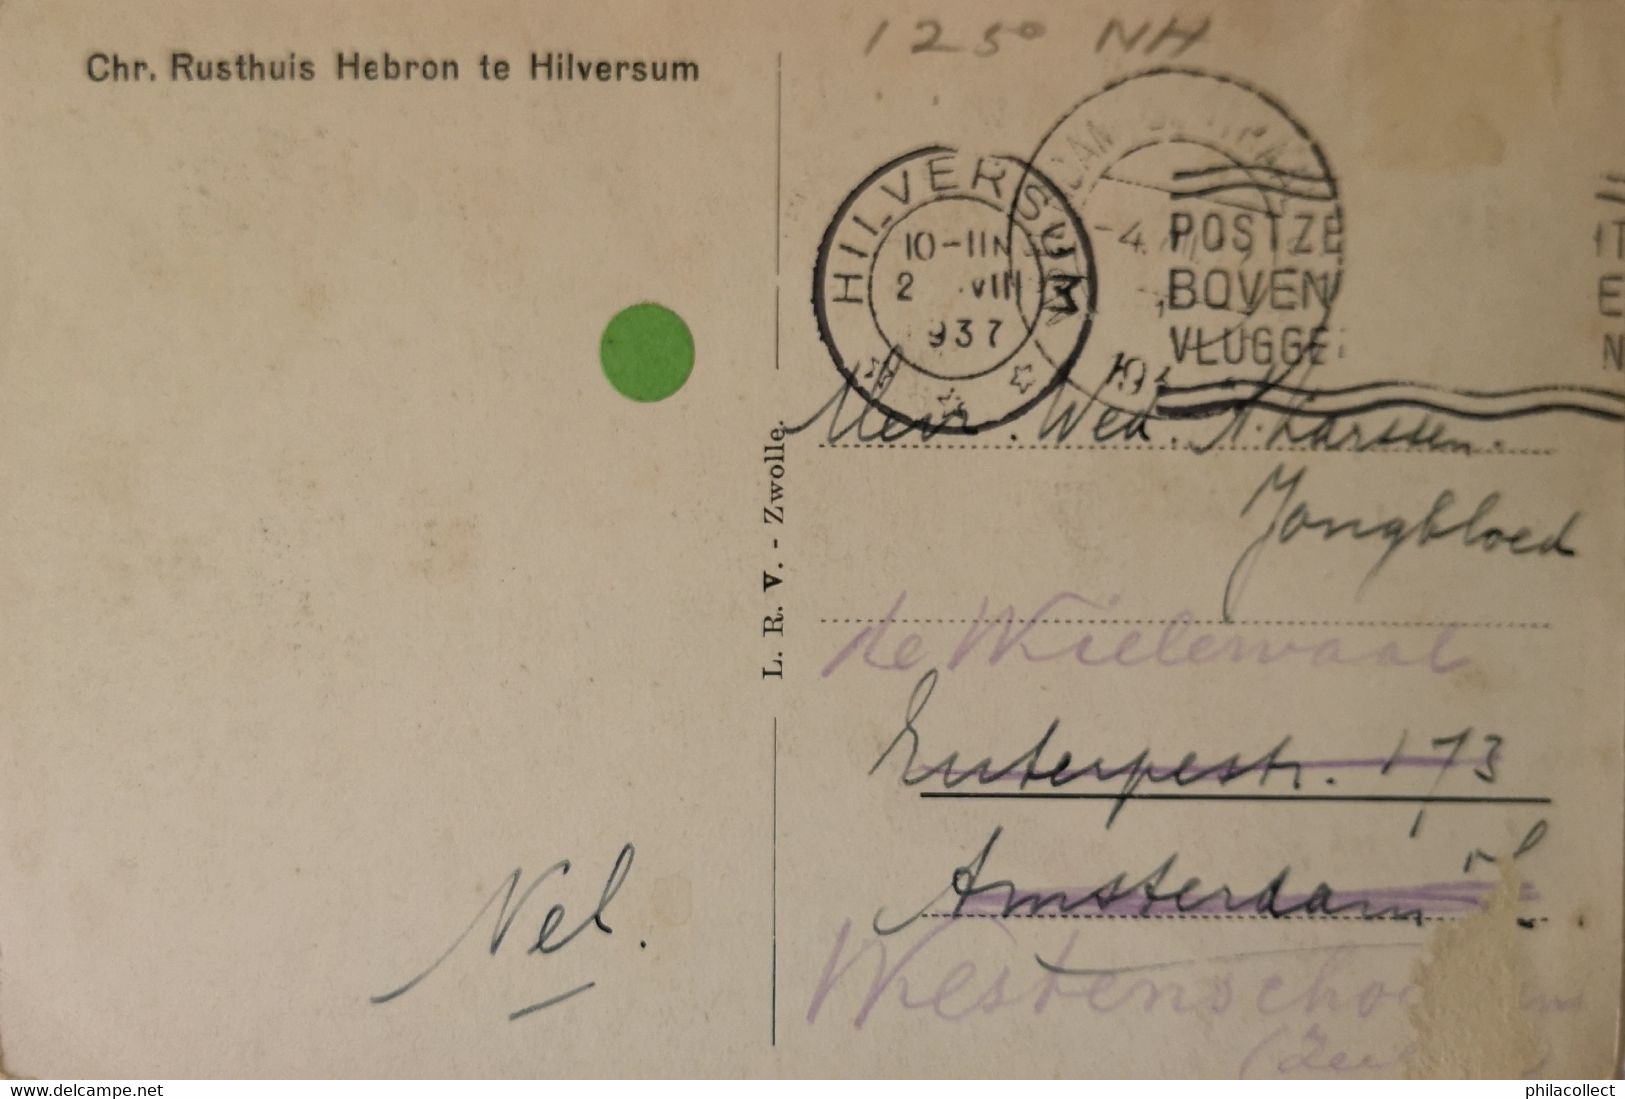 Hilversum // Rusthuis Hebron - De Nieuwe Vleugel 1937 - Hilversum